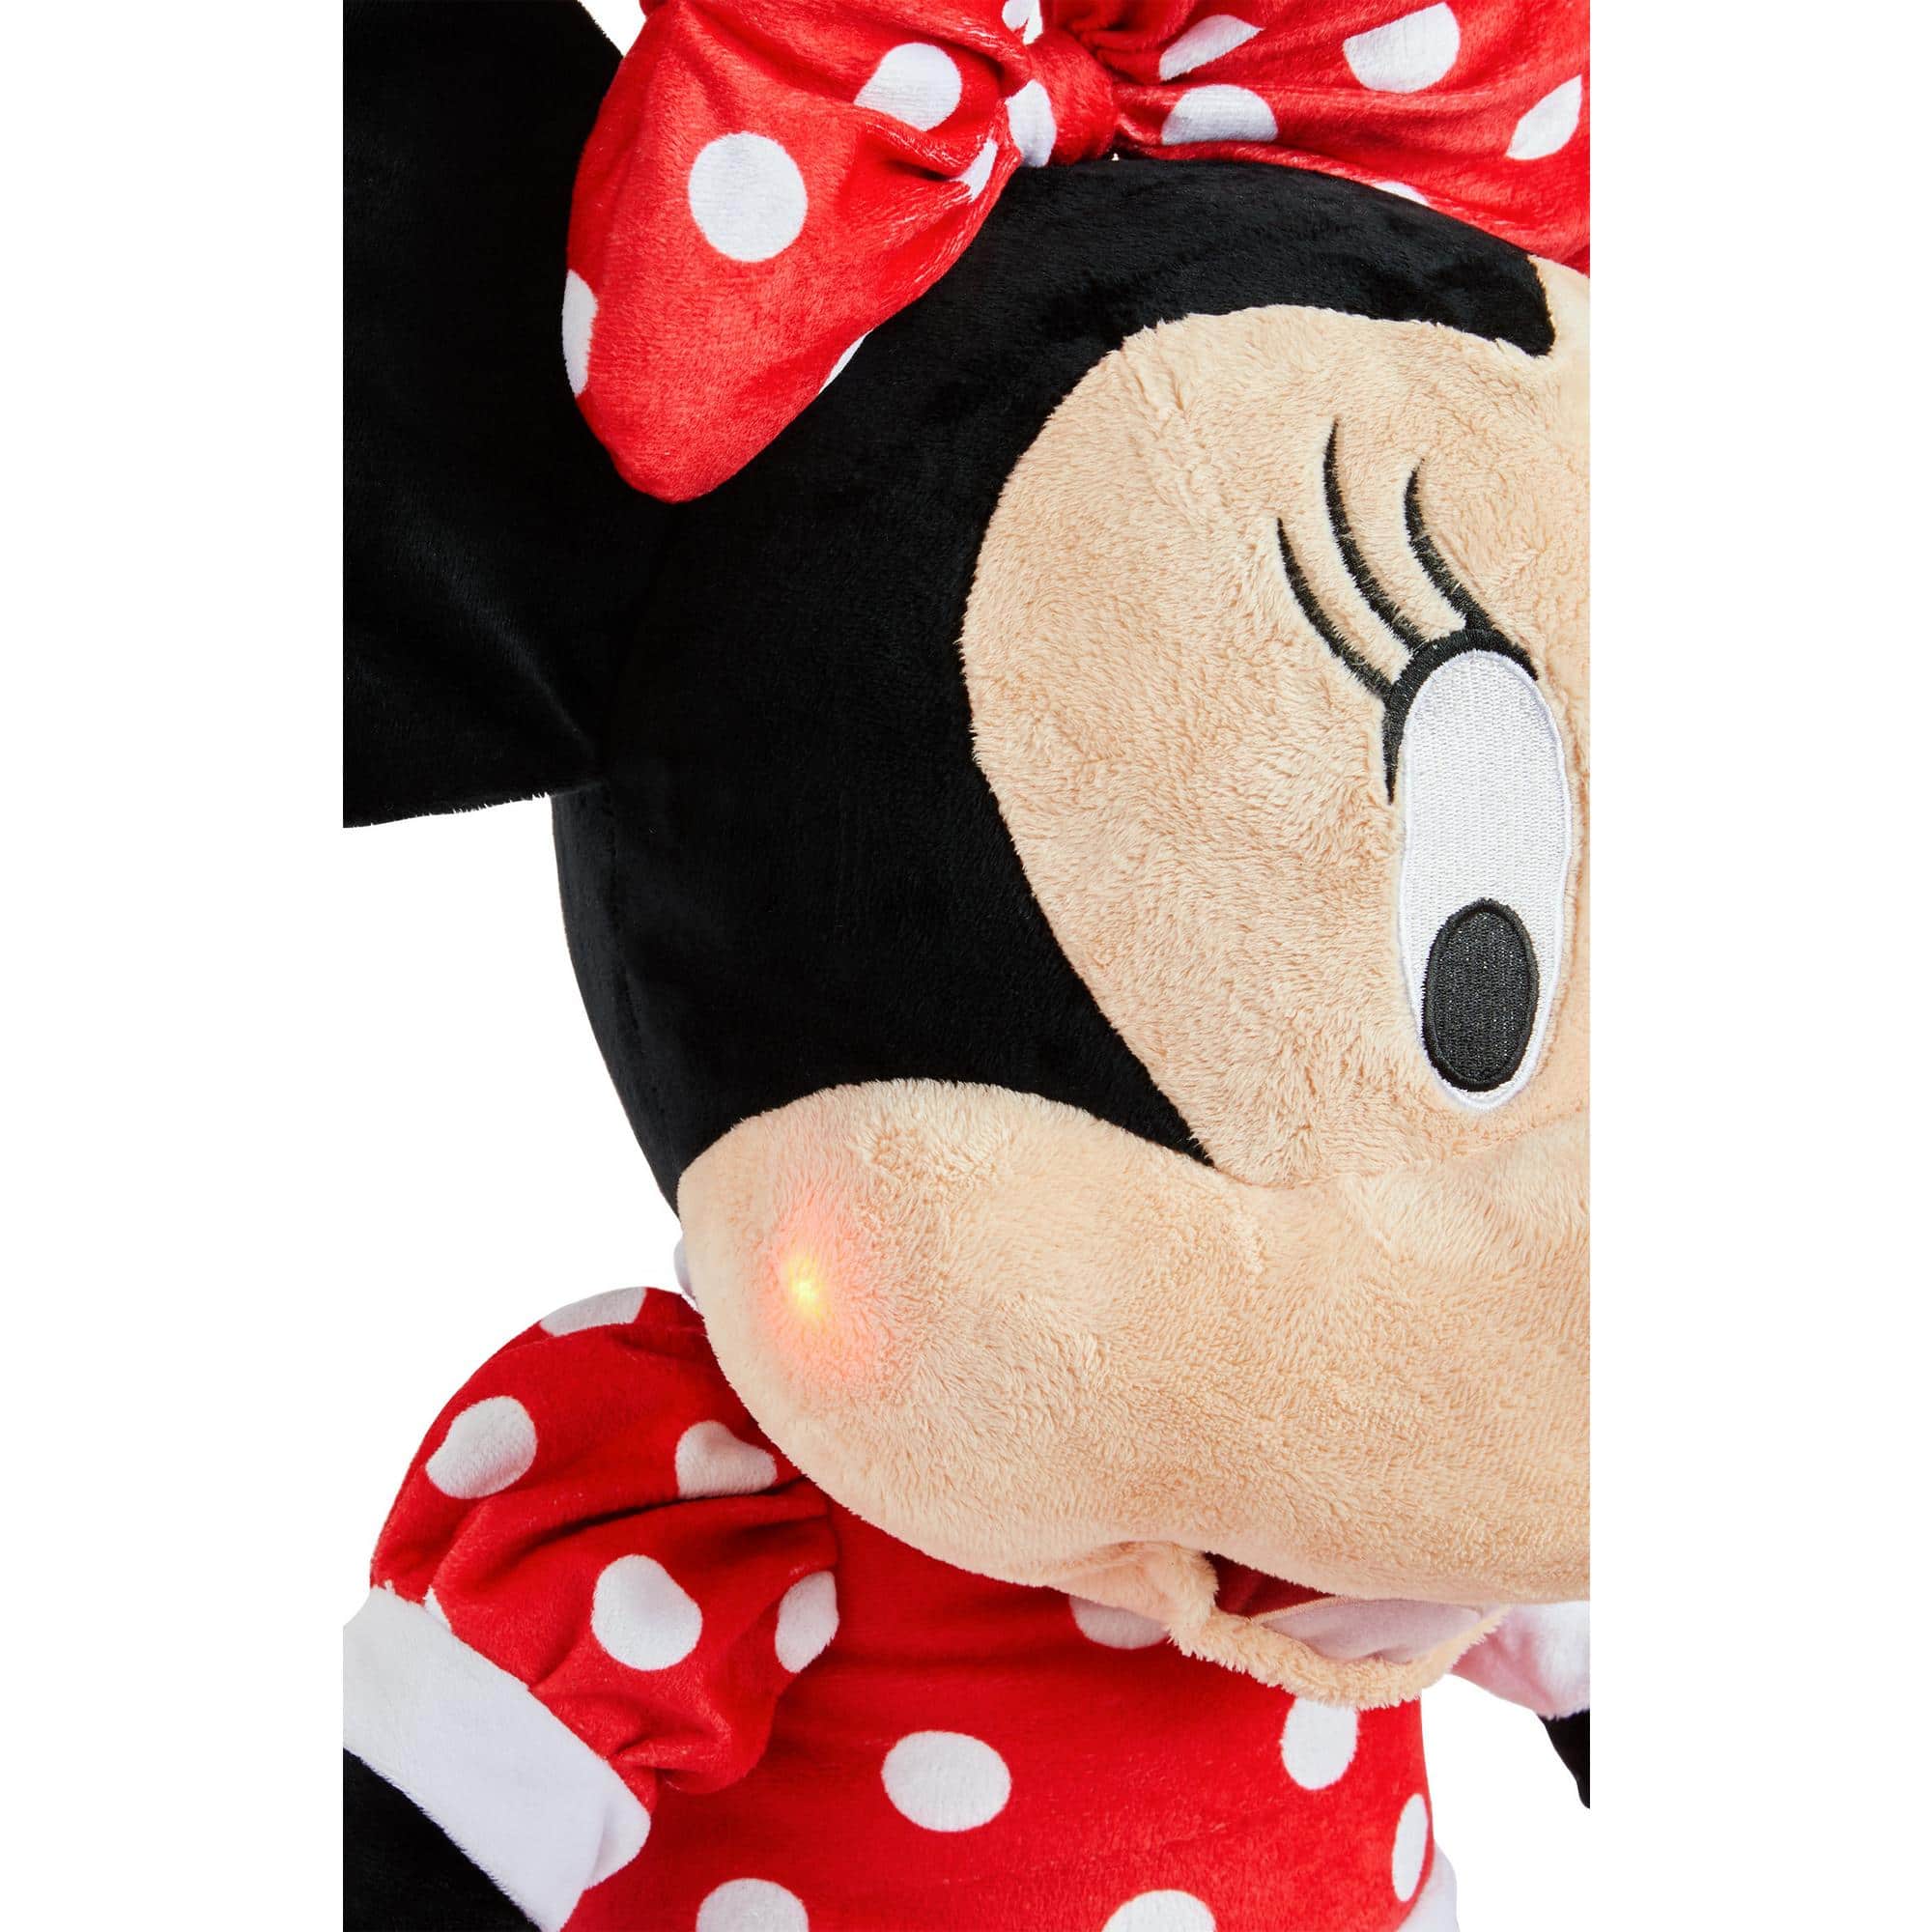 Doudou Disney personnalisé avec Minnie